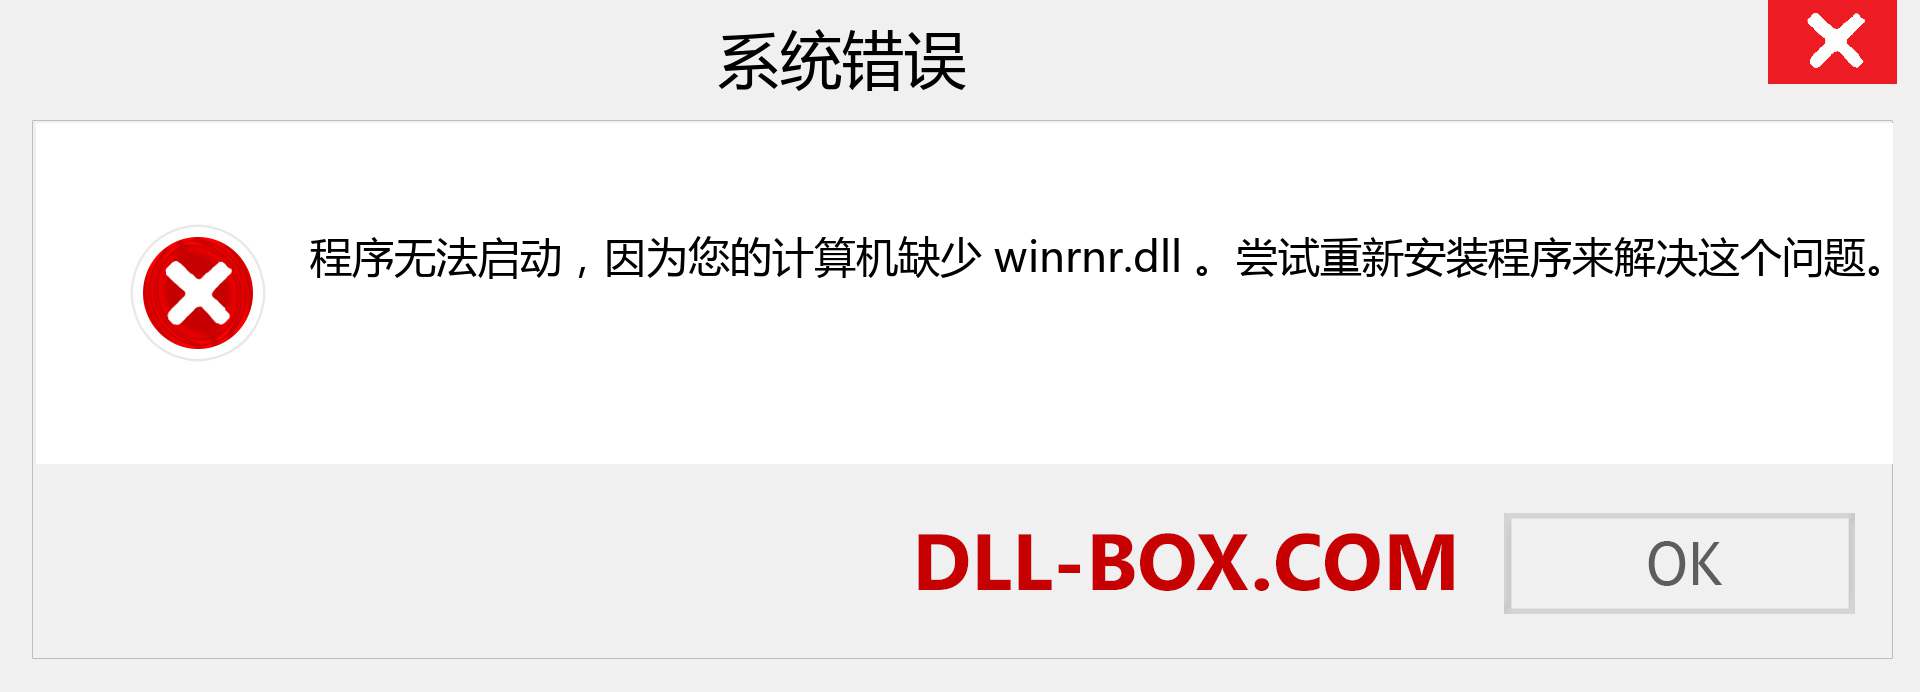 winrnr.dll 文件丢失？。 适用于 Windows 7、8、10 的下载 - 修复 Windows、照片、图像上的 winrnr dll 丢失错误